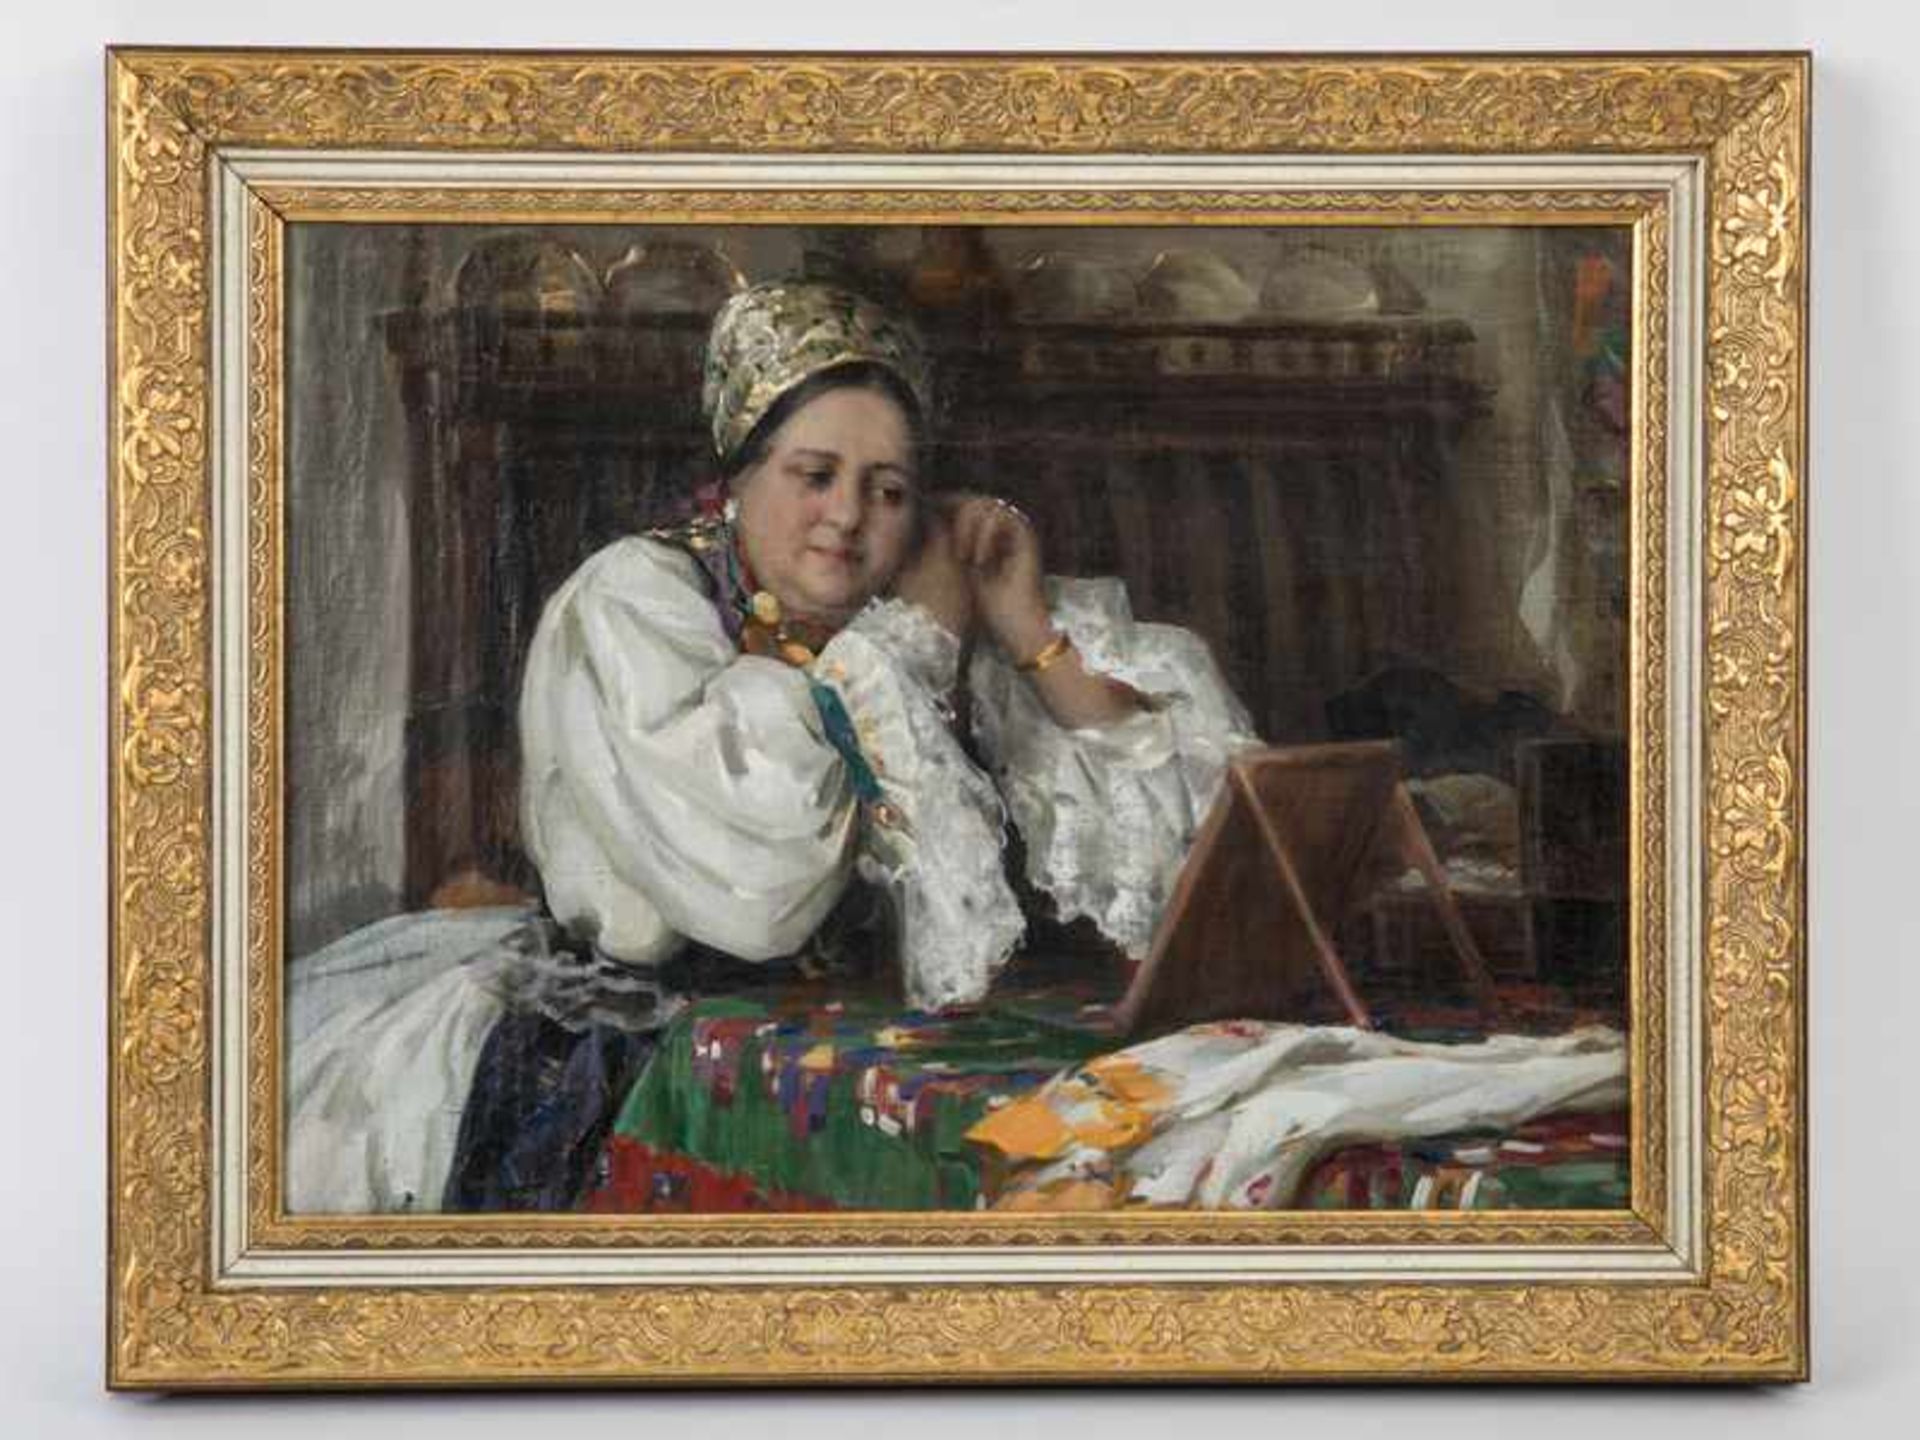 Haritonoff, Nicholas Basil (1880 - 1944) Öl auf Leinwand; Interieur mit sitzender Dame in Tracht